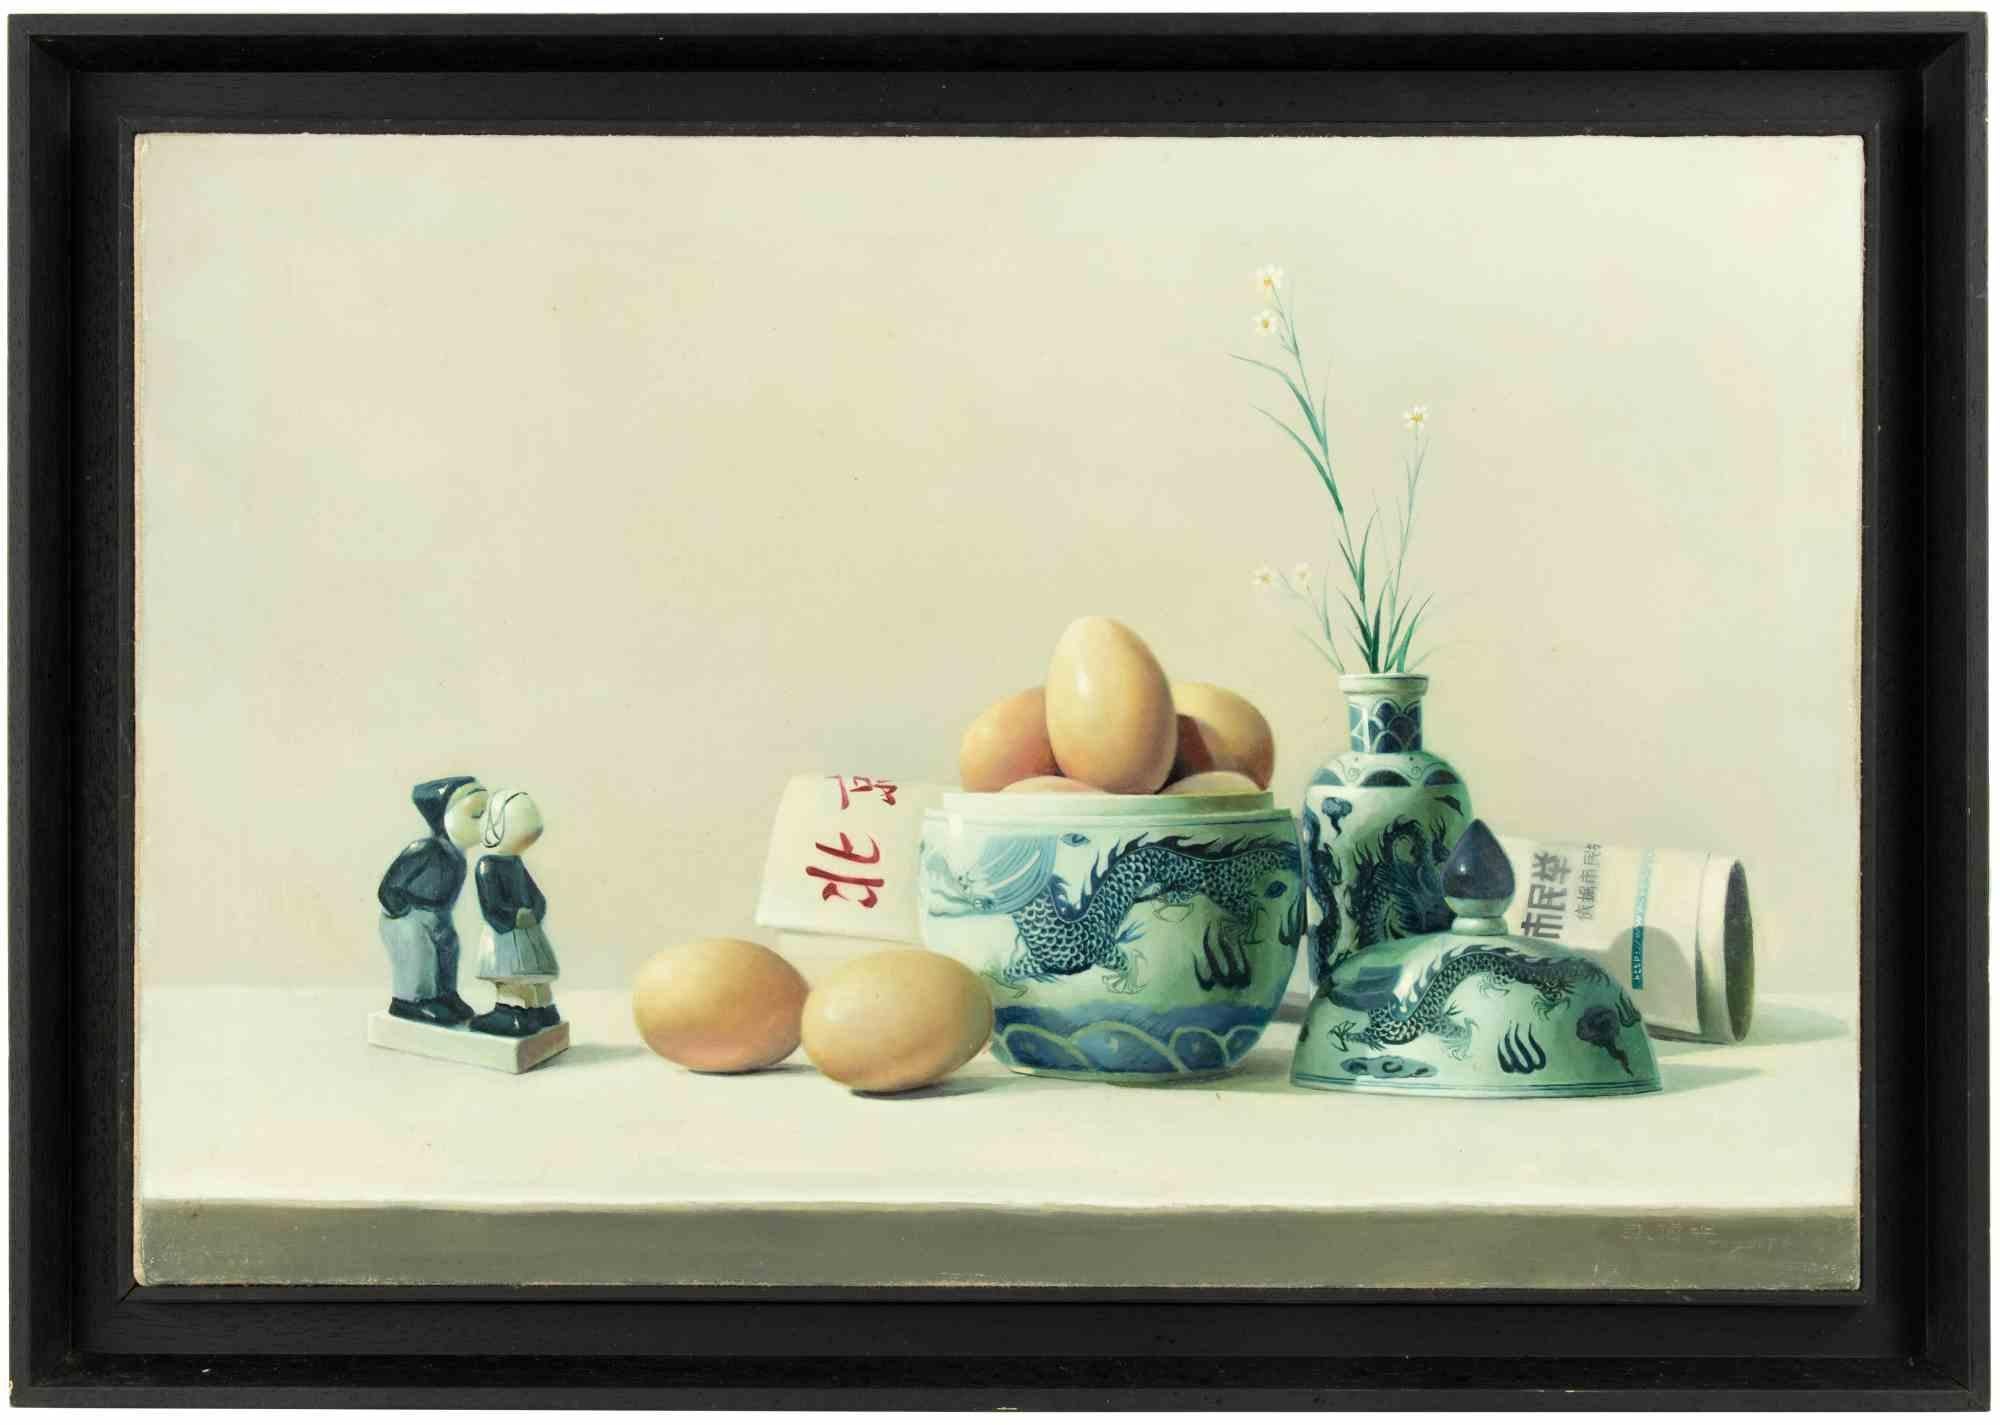 Le petit déjeuner est une peinture à l'huile réalisée  par Zhang Wei Guang (Miroir) dans les années 2000.

Inclut le cadre.

Signature et divers signes en calligraphie chinoise au dos.

Très bonnes conditions.

Zhang Wei Guang, également appelé